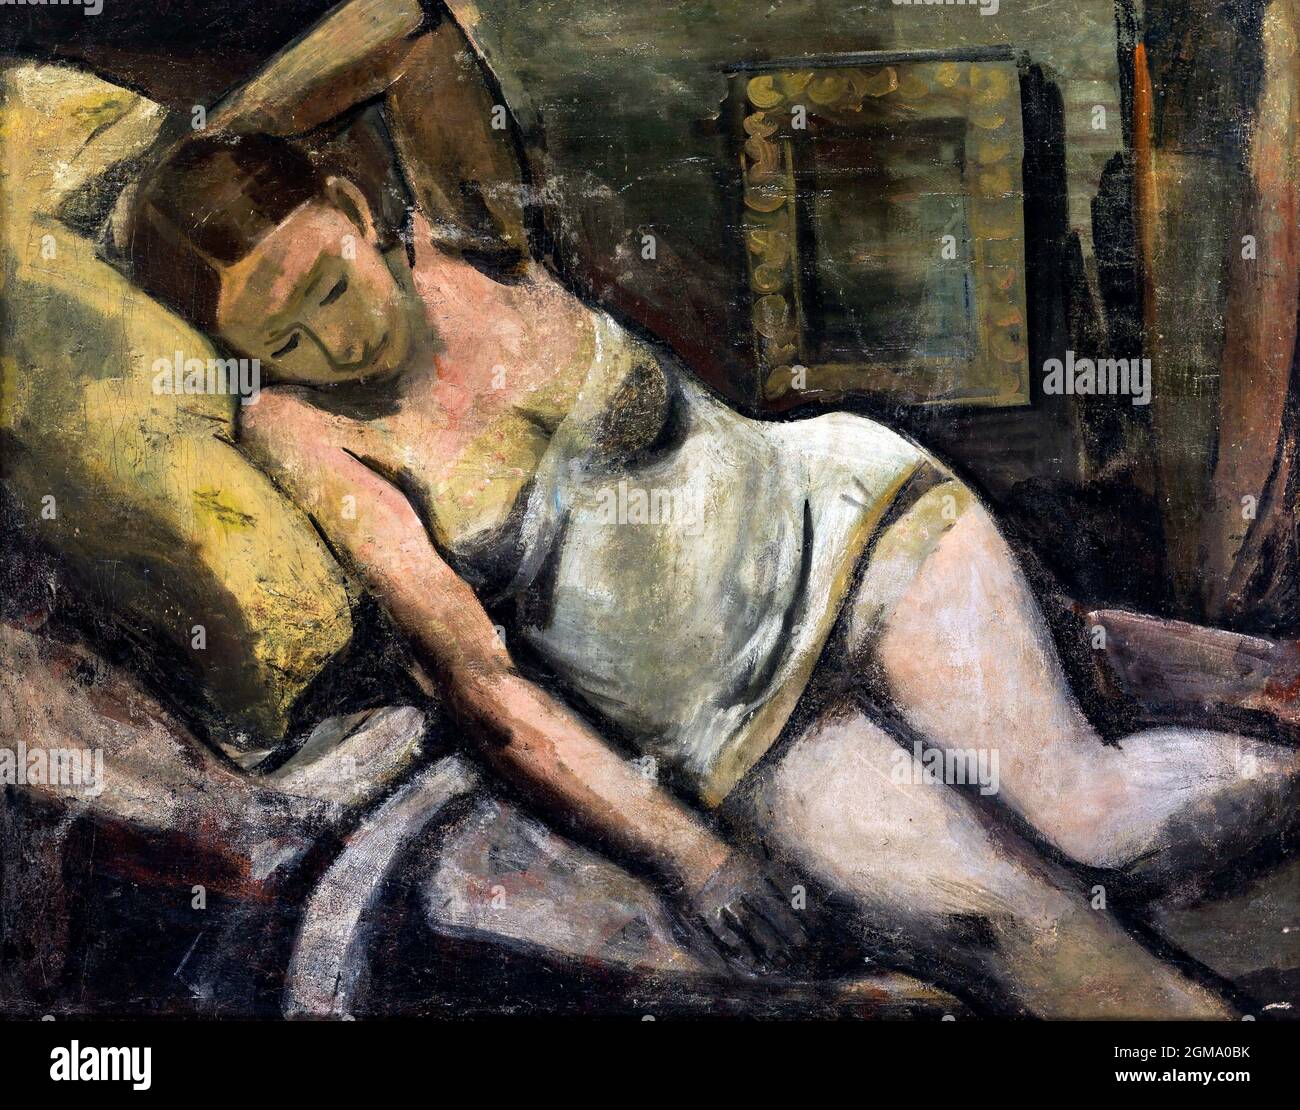 Frau, die auf einem gelben Kissen schläft (Donna che dorme su un cuscino giallo) des österreichischen Künstlers Louis Christian Hess (1845-1944), Öl auf Leinwand, 1928 Stockfoto